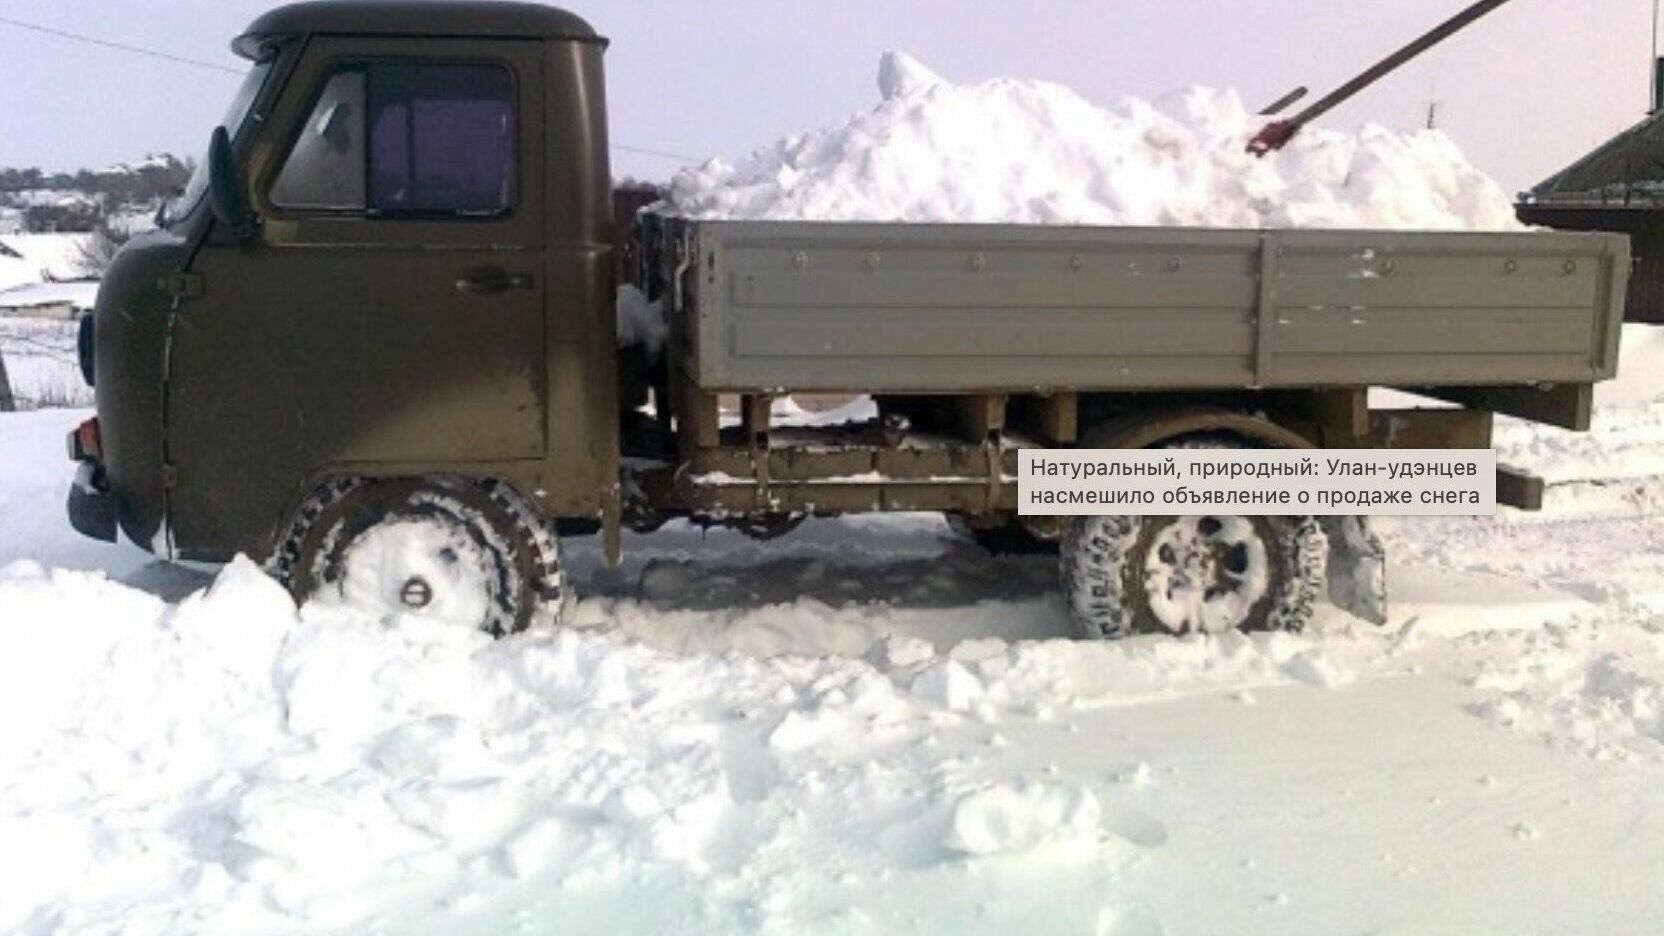 «Вывозить за границу запрещено»: в Улан-Удэ продают грузовик снега